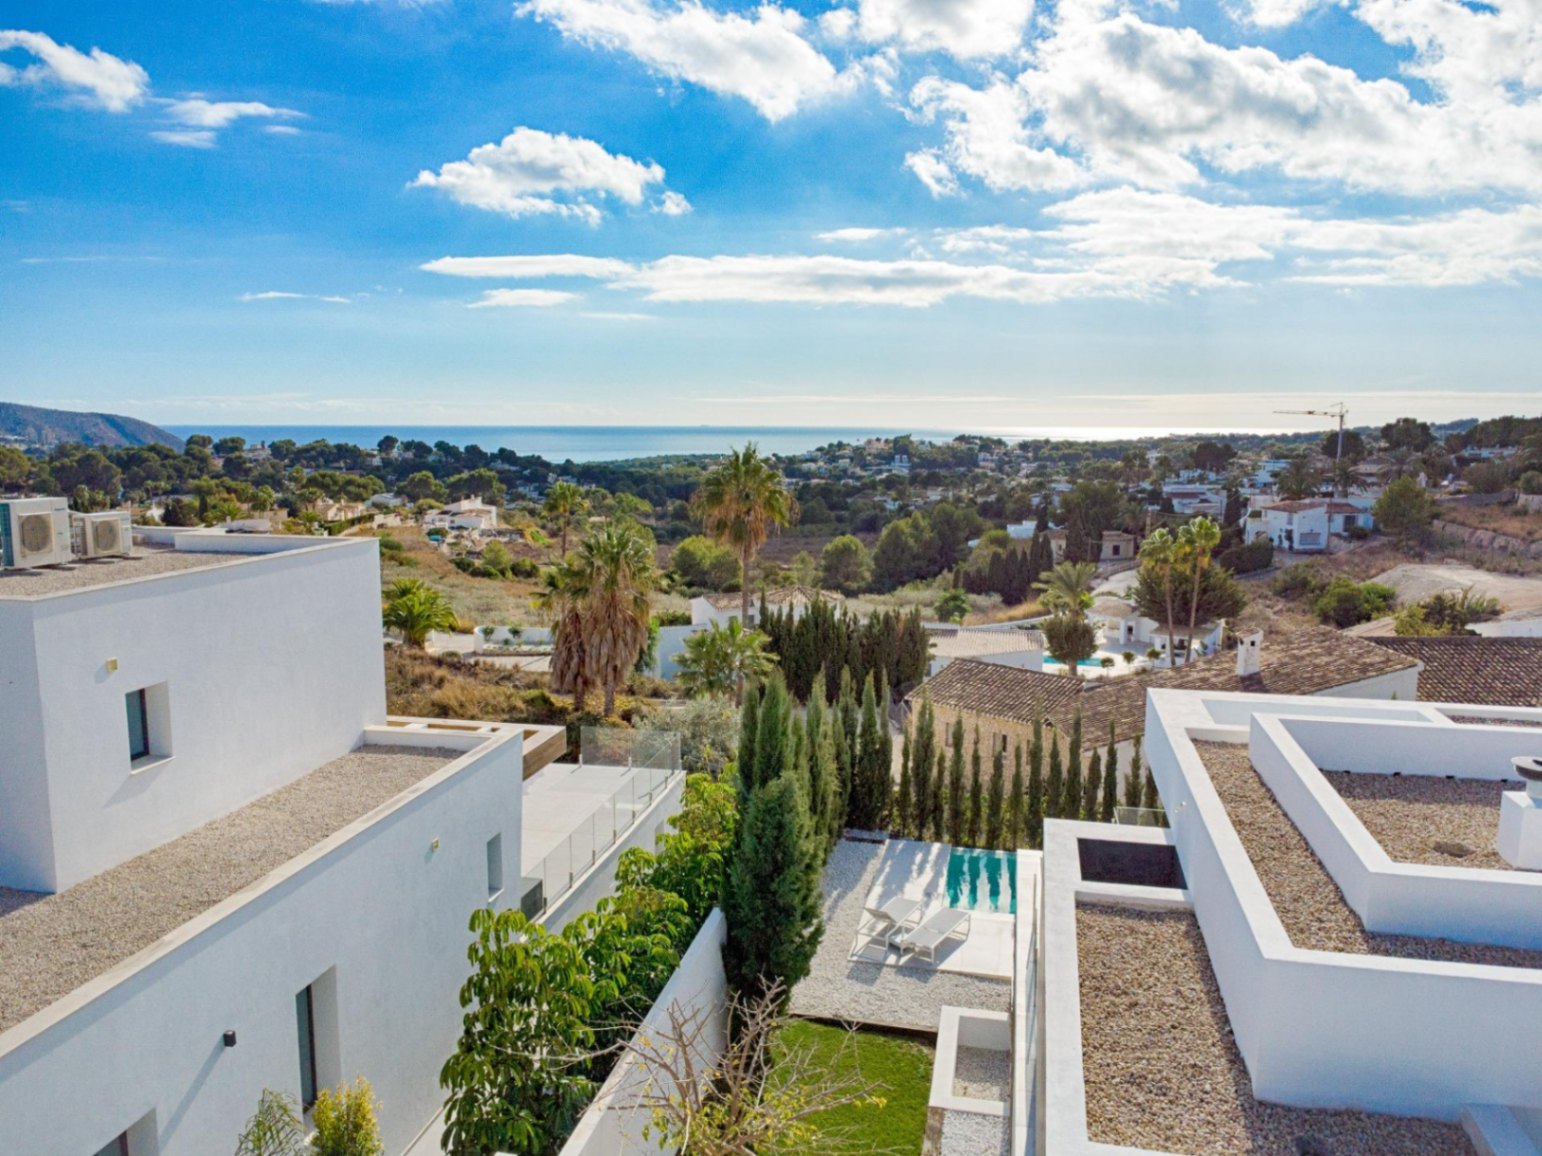 Ibiza stijl villa met uitzicht op zee in Camarrocha Moraira